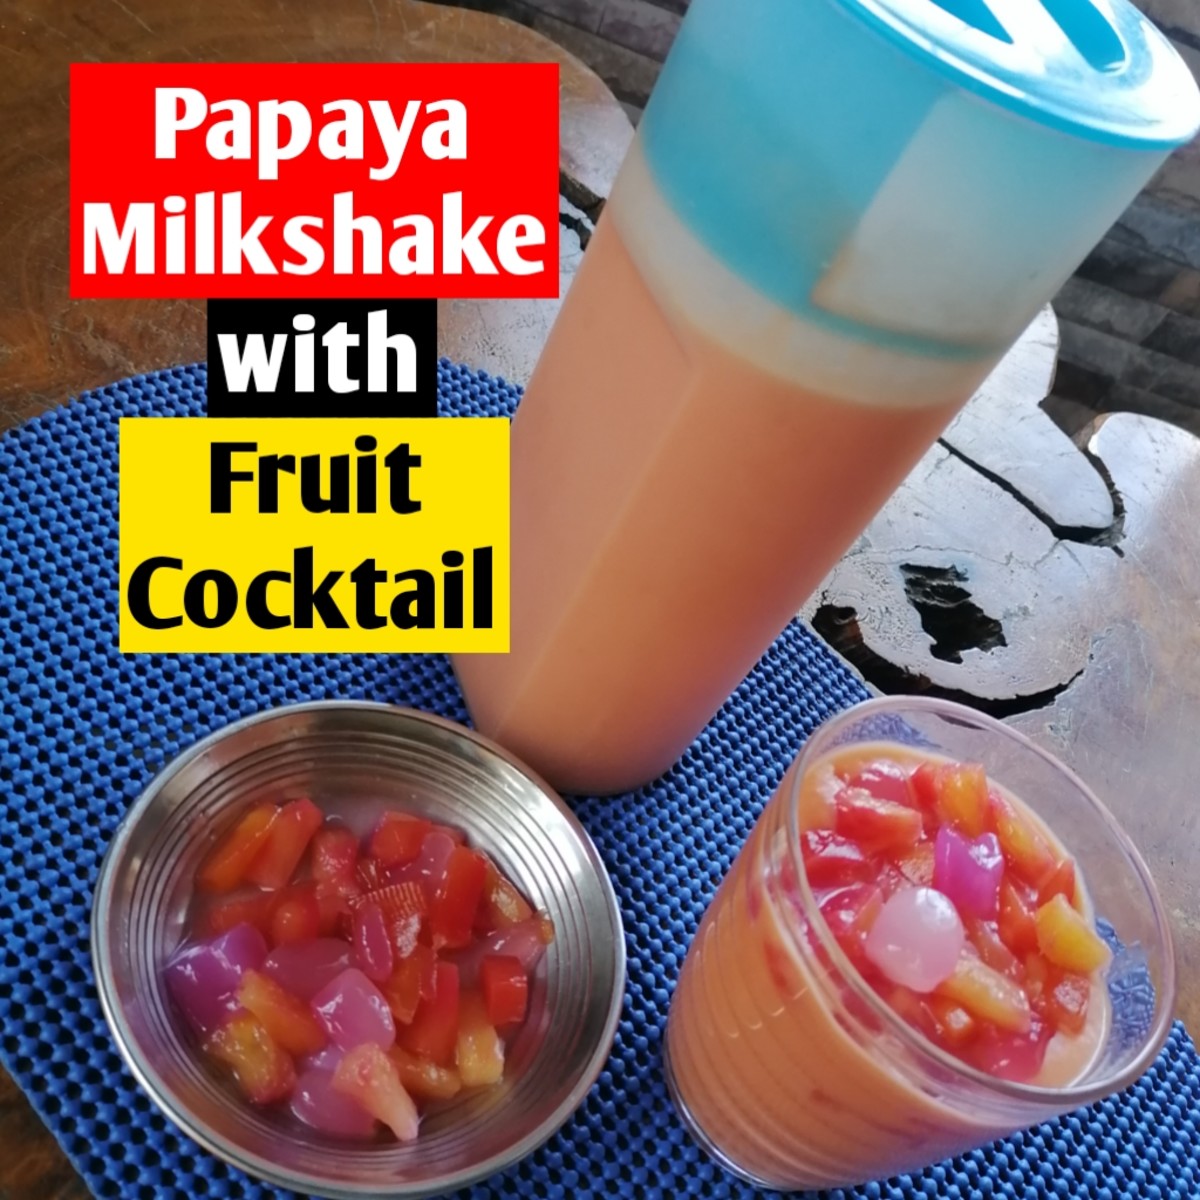 How to Make Fresh Papaya Milkshake With Fruit Cocktail